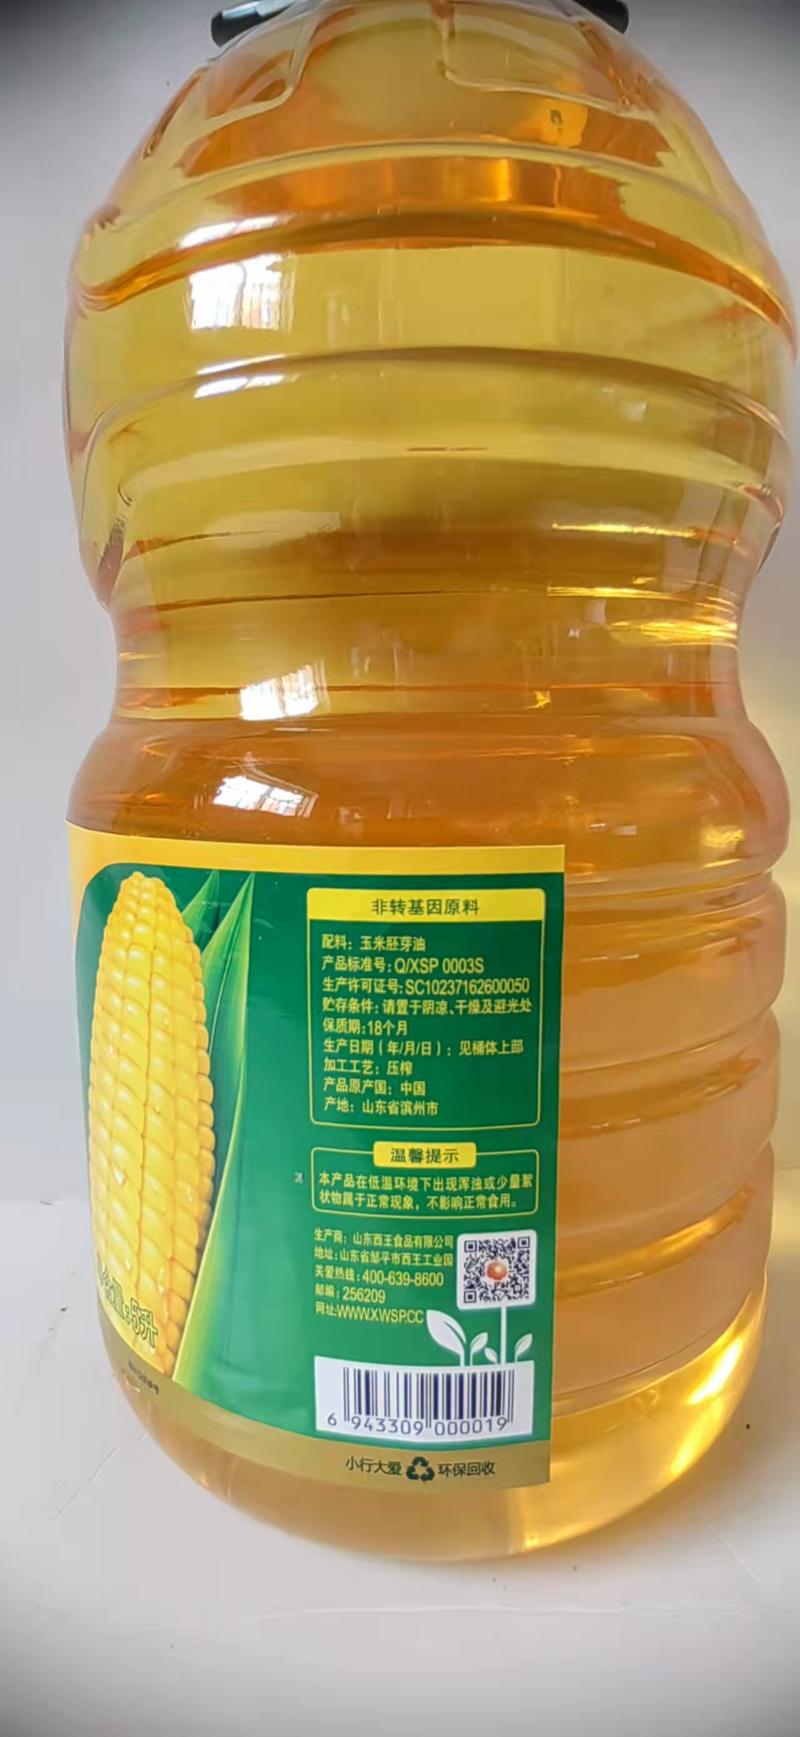 【胚芽油】西王非转基因玉米胚芽油厂家直销欢迎采购